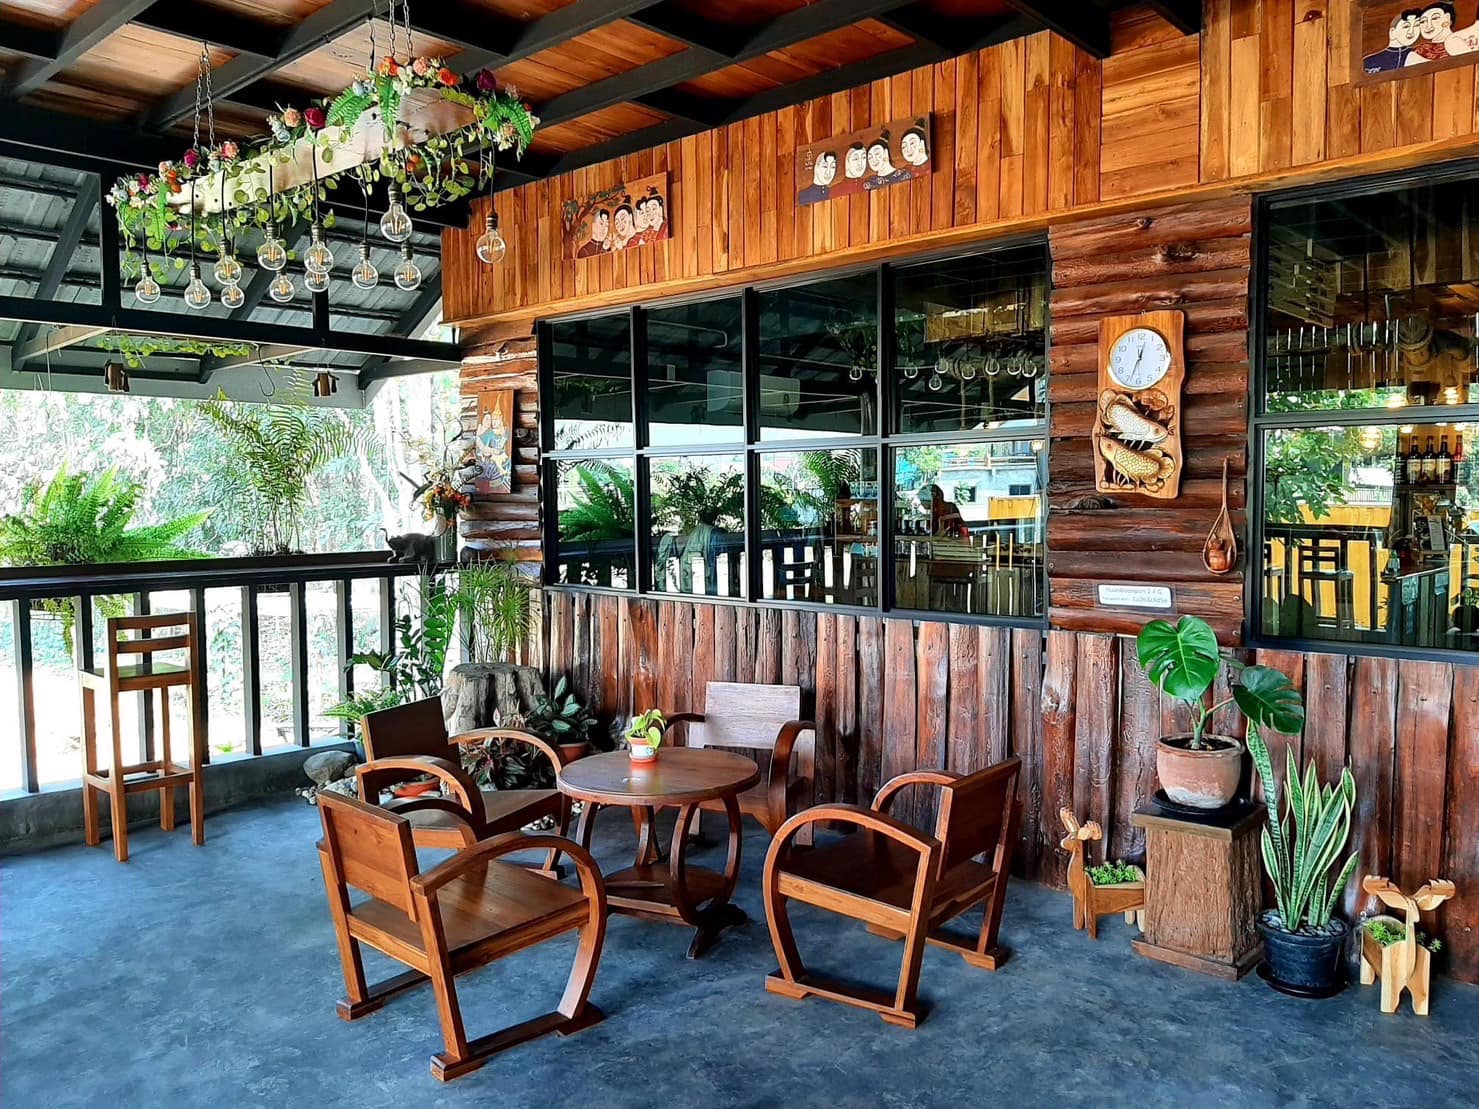 ขาย บ้าน เดี่ยว ไม้สักทรงไทยประยุกต์ สร้างใหม่ สำหรับลงทุนทำธุรกิจร้านกาแฟ โฮมออฟฟิศ ร้านอาหารได้ LH-SW000518 รูปที่ 1